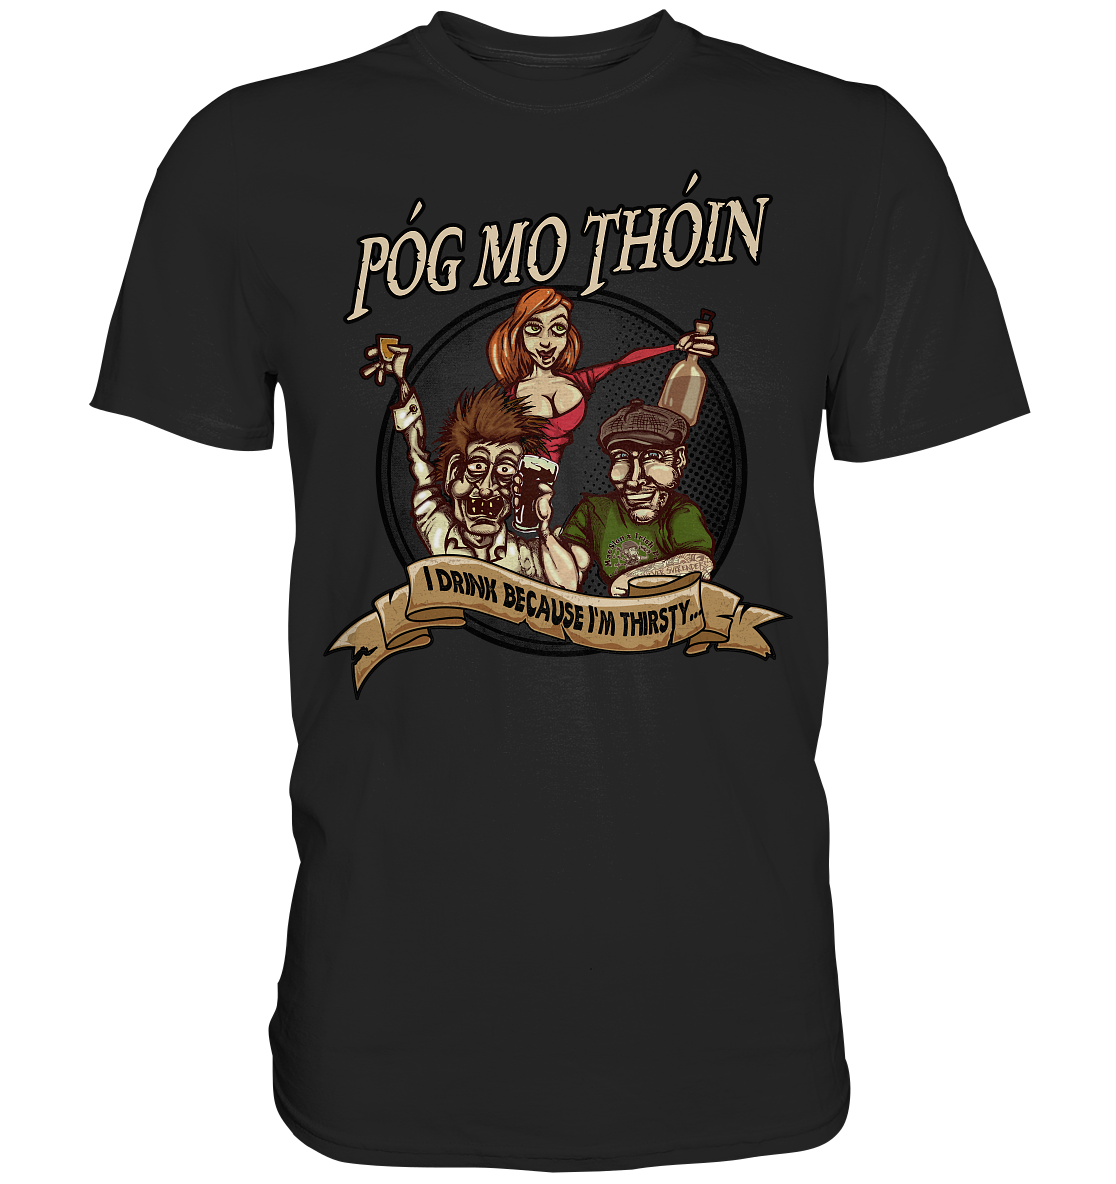 Póg Mo Thóin "I Drink Because I'm Thirsty" - Premium Shirt